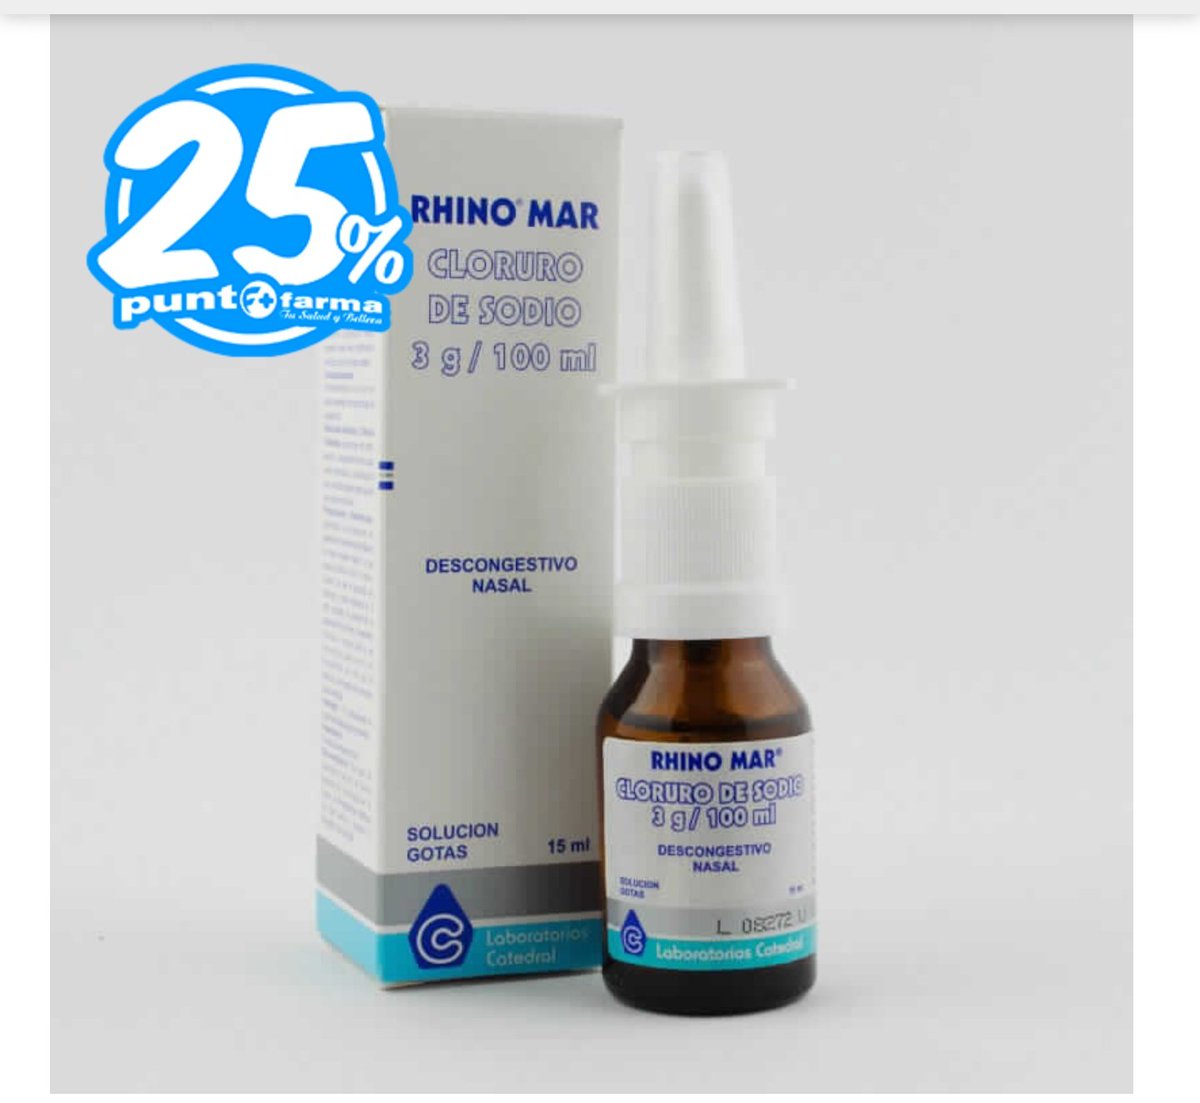 Rhino Mar Cloruro de Sodio 3 g/100 mL - Solución Gotas Spray Nasal de 15 mL